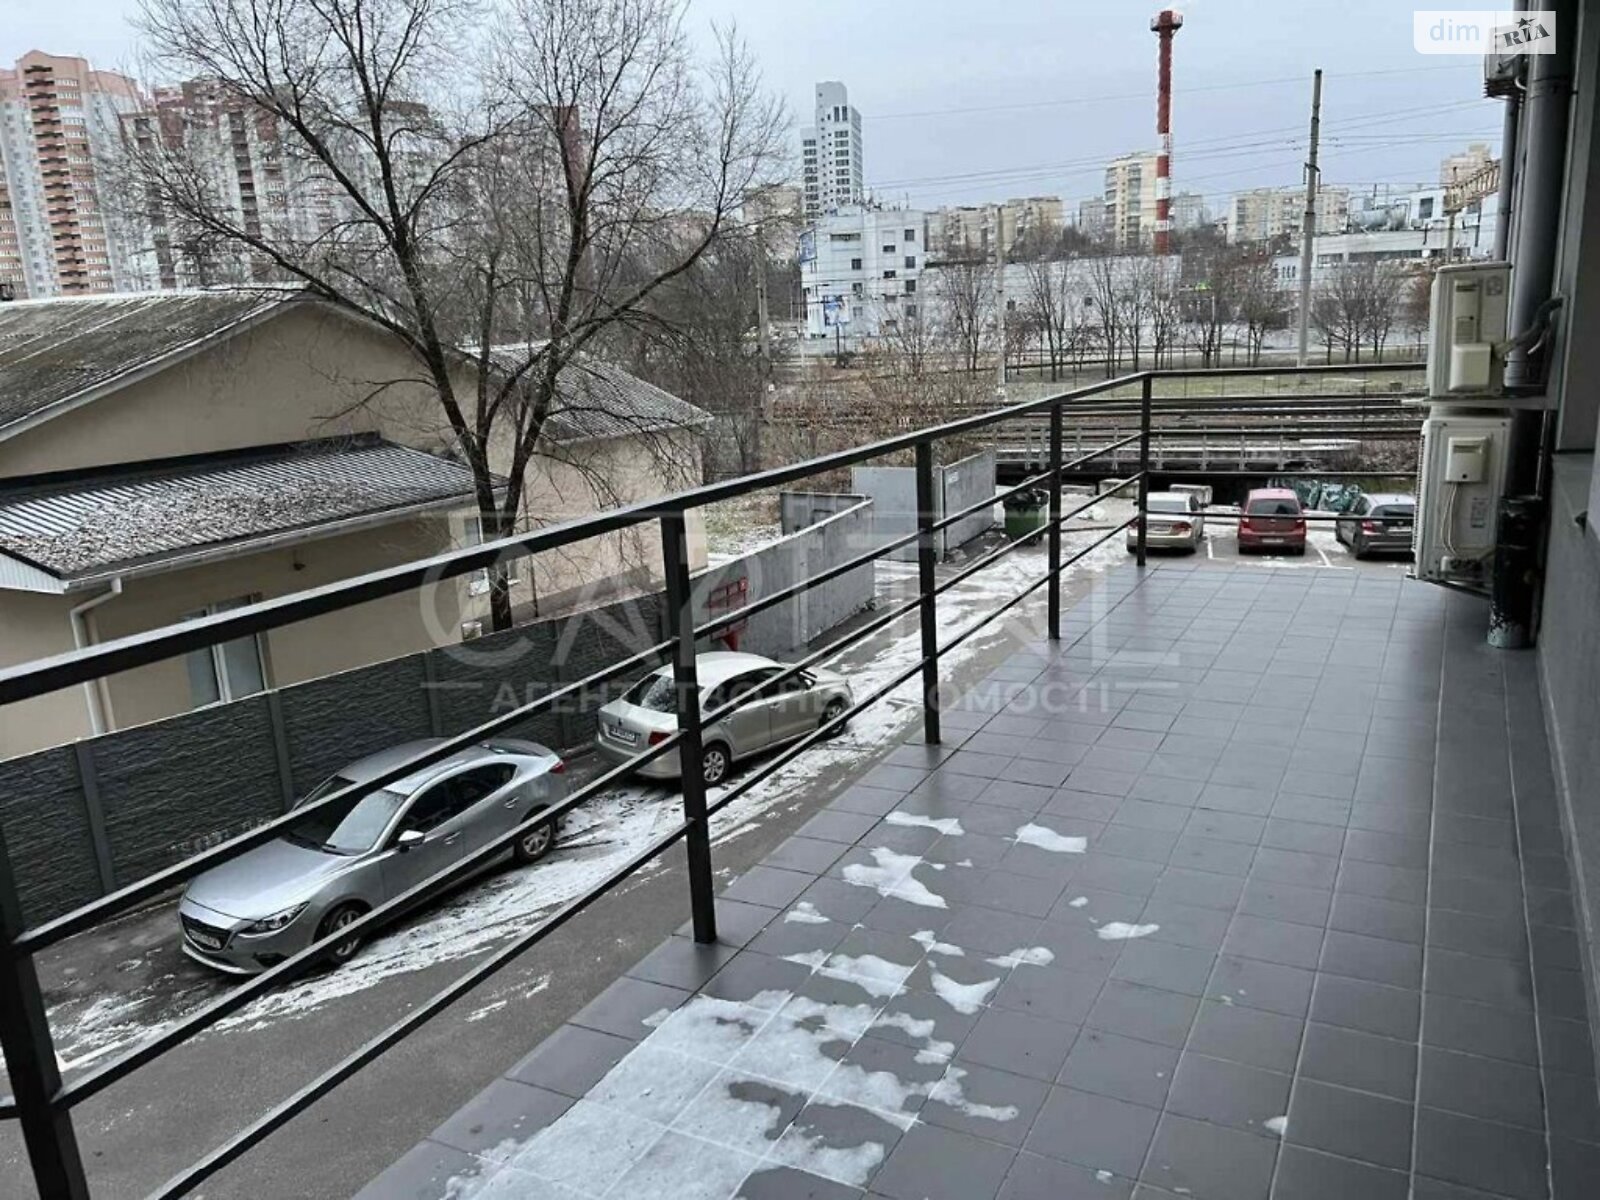 Аренда офисного помещения в Киеве, Железнодорожное шоссе 2А, помещений - 6, этаж - 2 фото 1